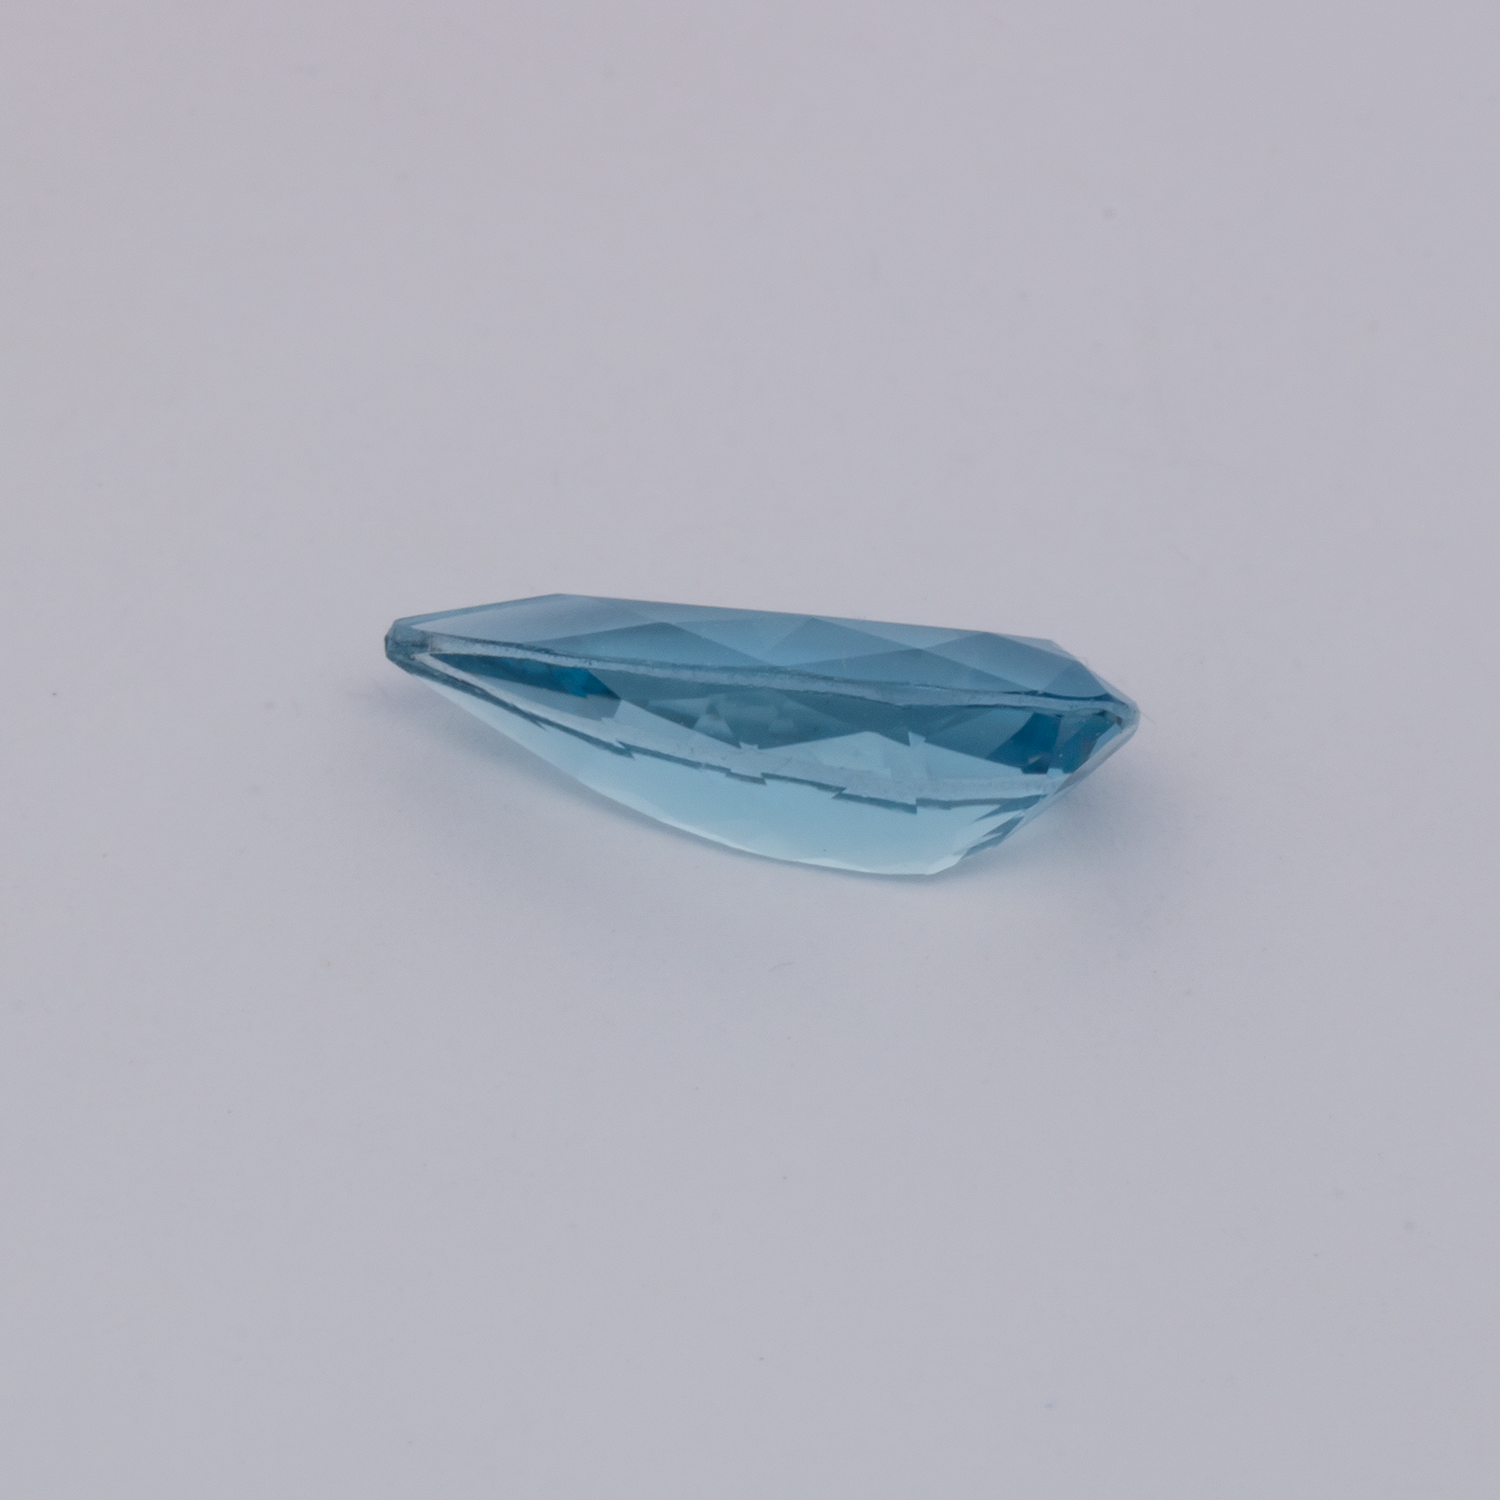 Aquamarin AAA - blau, birnform, 11x5.1 mm, 1.01 cts, Nr. A99096